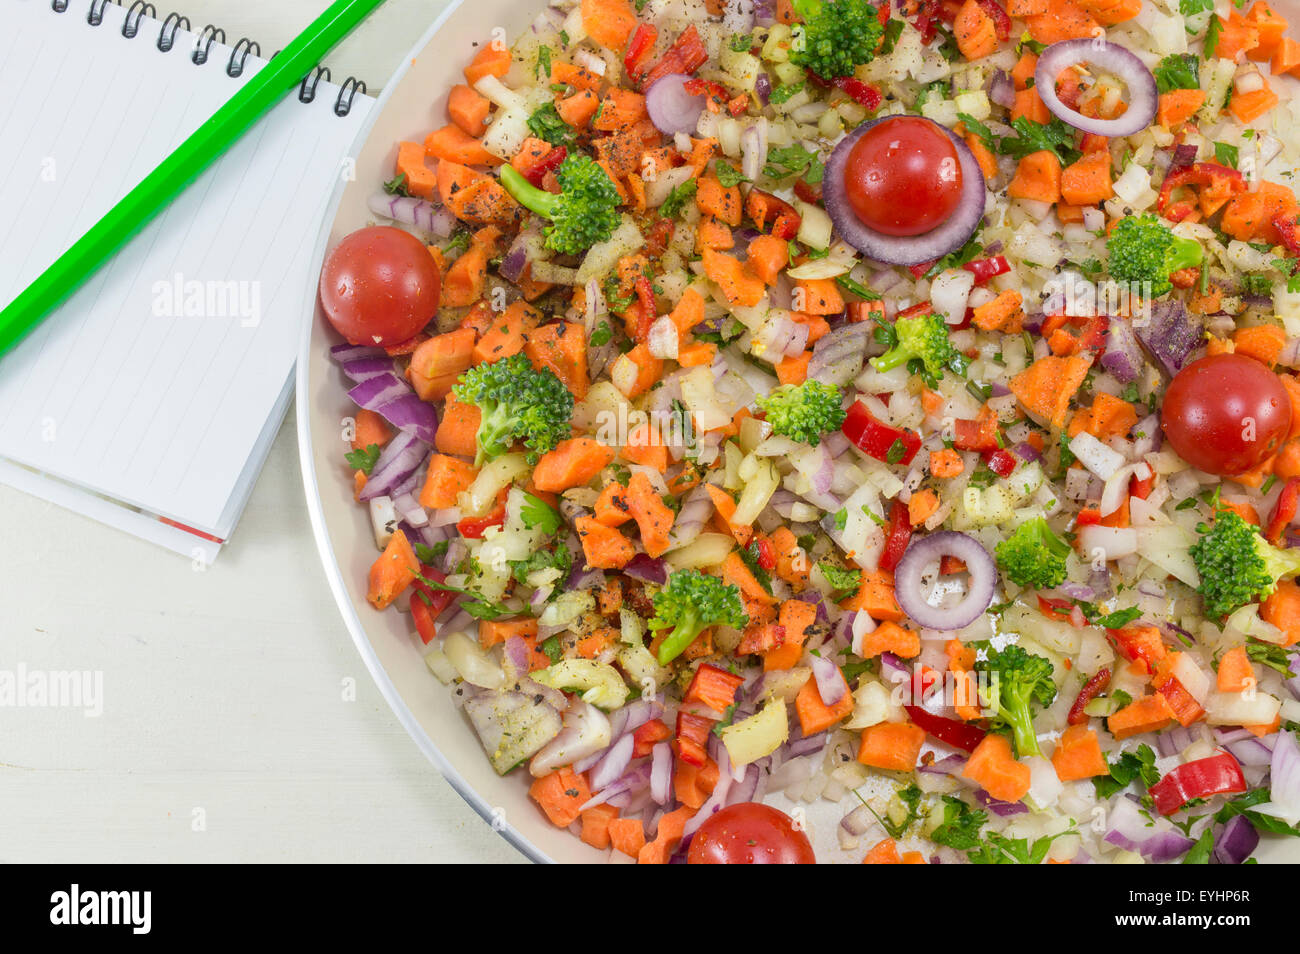 Insalata di verdure su una piastra accanto a un quaderno e una penna per scrivere la ricetta. La cottura di cibo Foto Stock